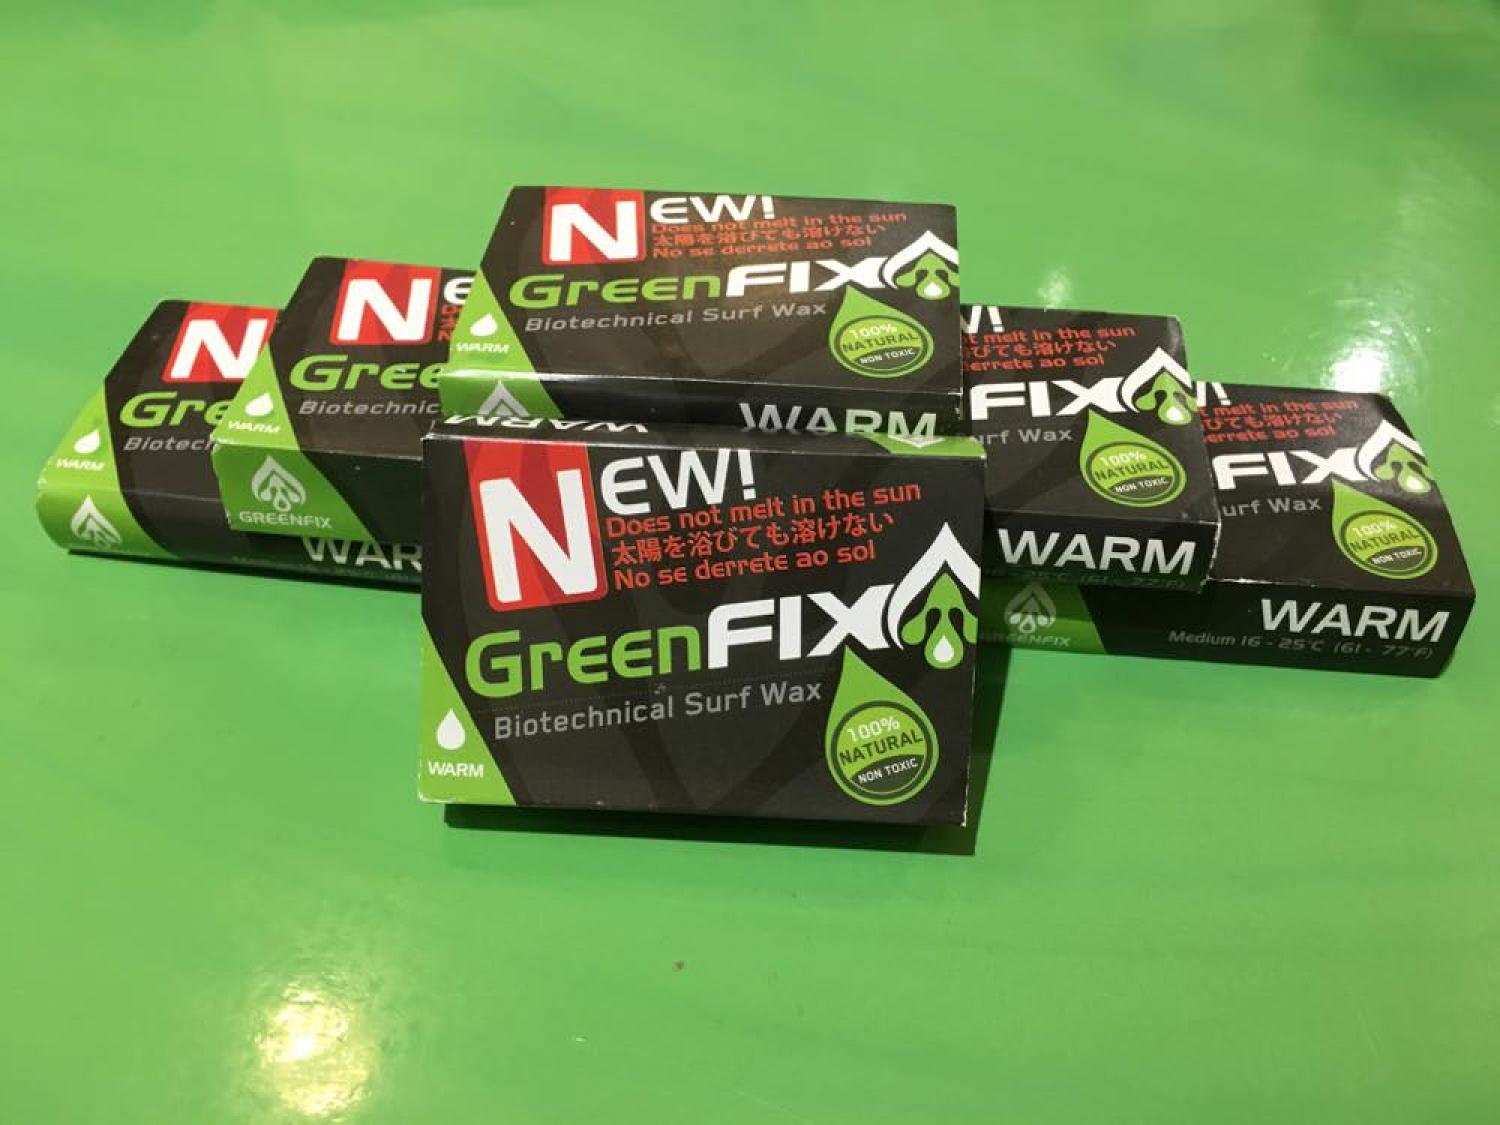 Green FIX WARM